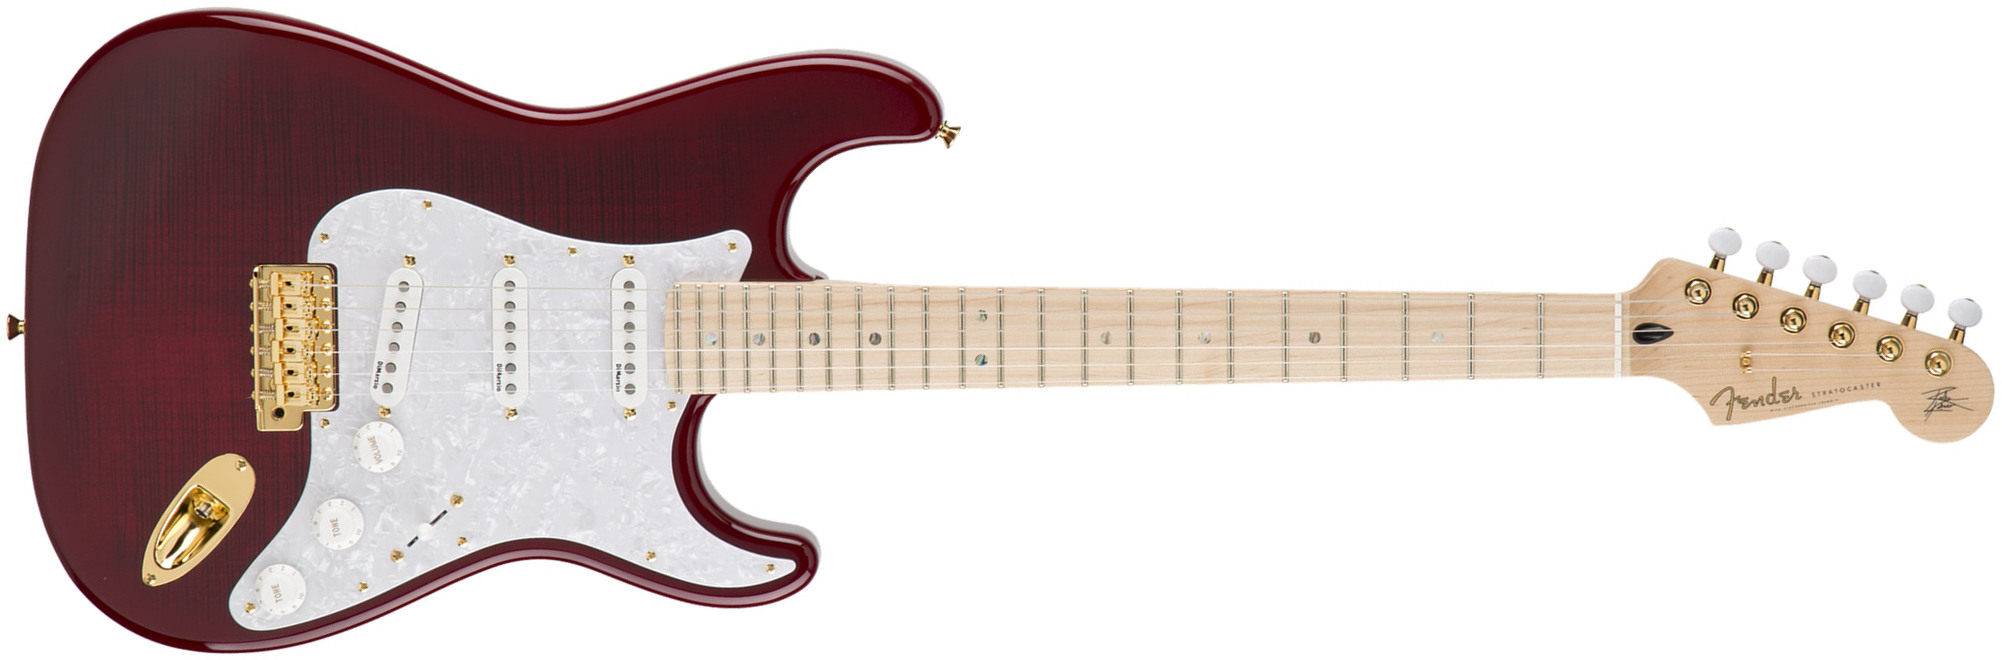 Fender Richie Kotzen Strat Japan Ltd 3s Mn - Transparent Red Burst - Guitarra eléctrica con forma de str. - Main picture